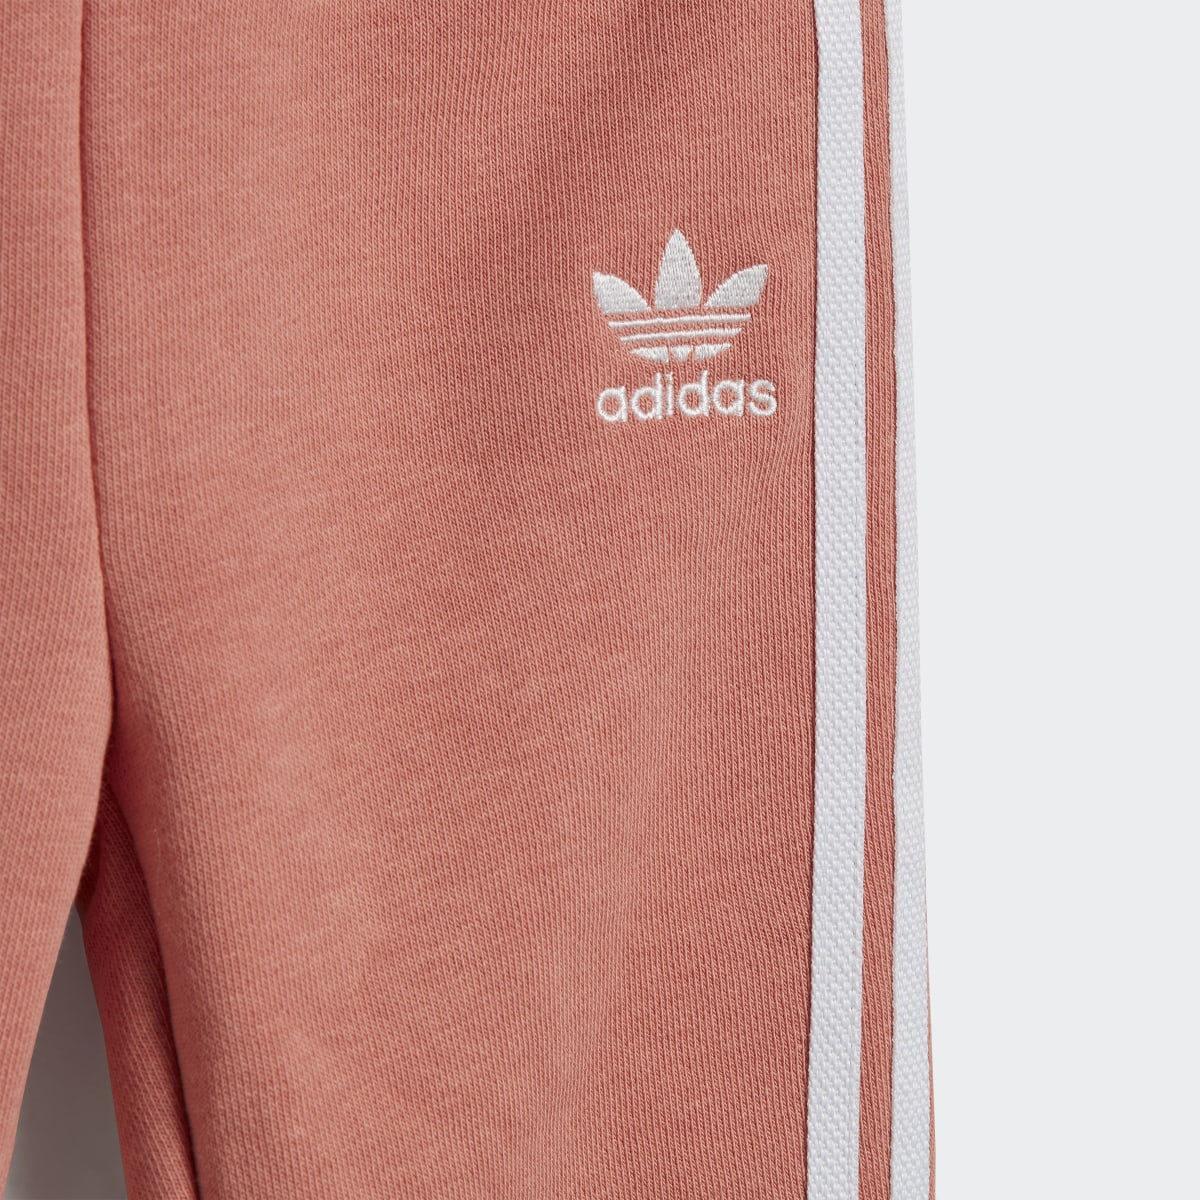 Adidas Ensemble avec sweat-shirt ras-du-cou à imprimé animal intégral. 9